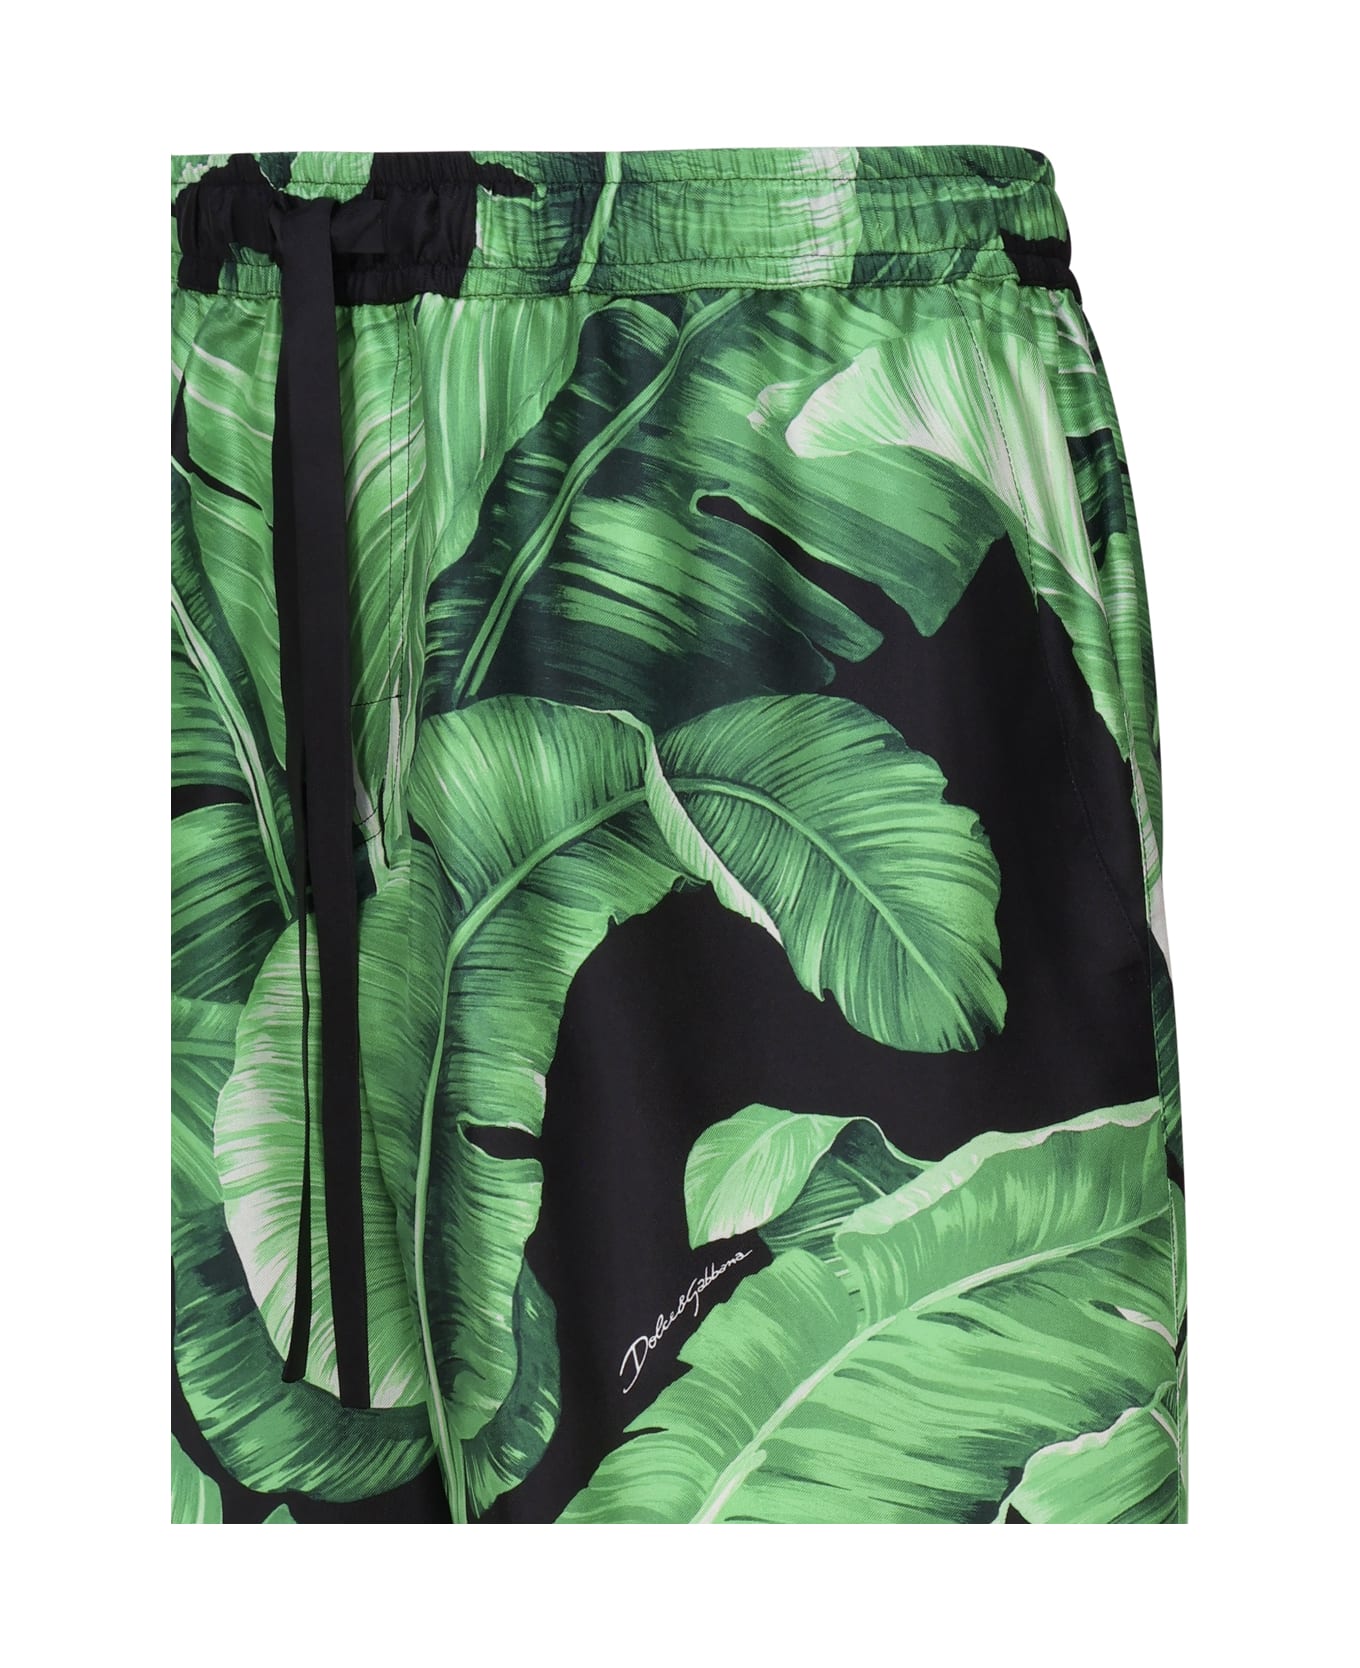 Dolce & Gabbana Shorts With Silk Print - Green